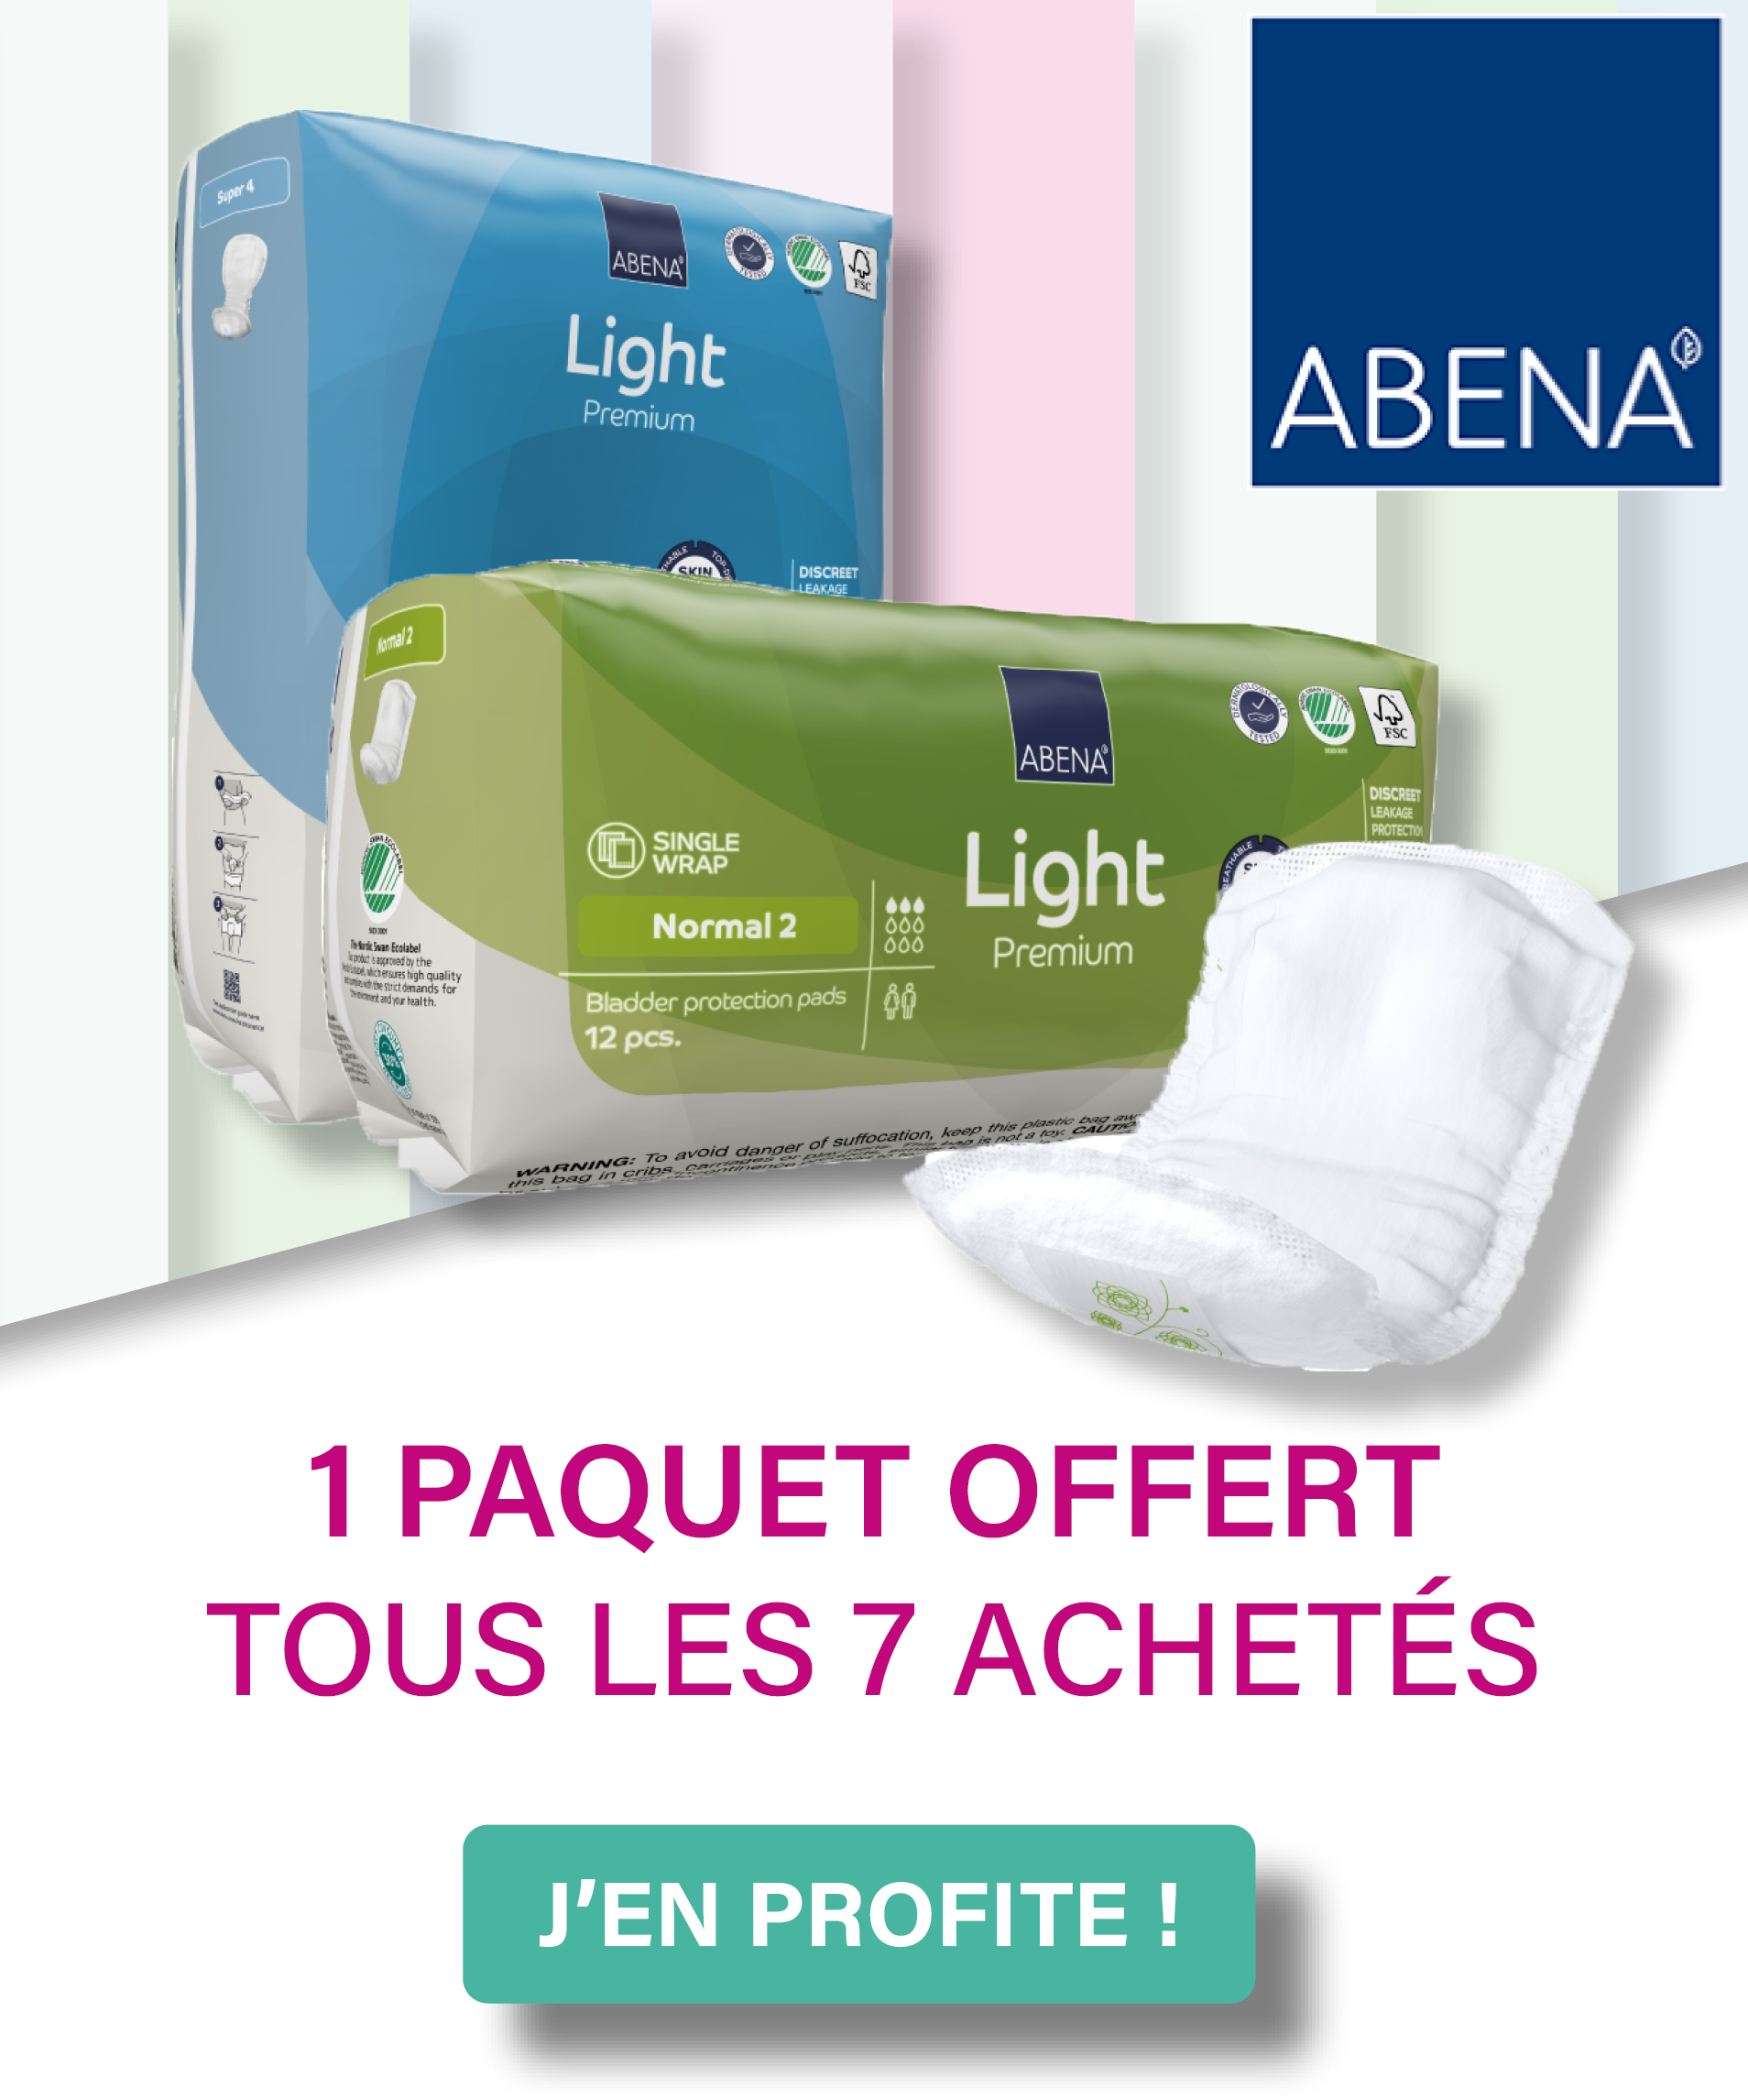 Accédez à la promotion Abena-Frantex Light Premium